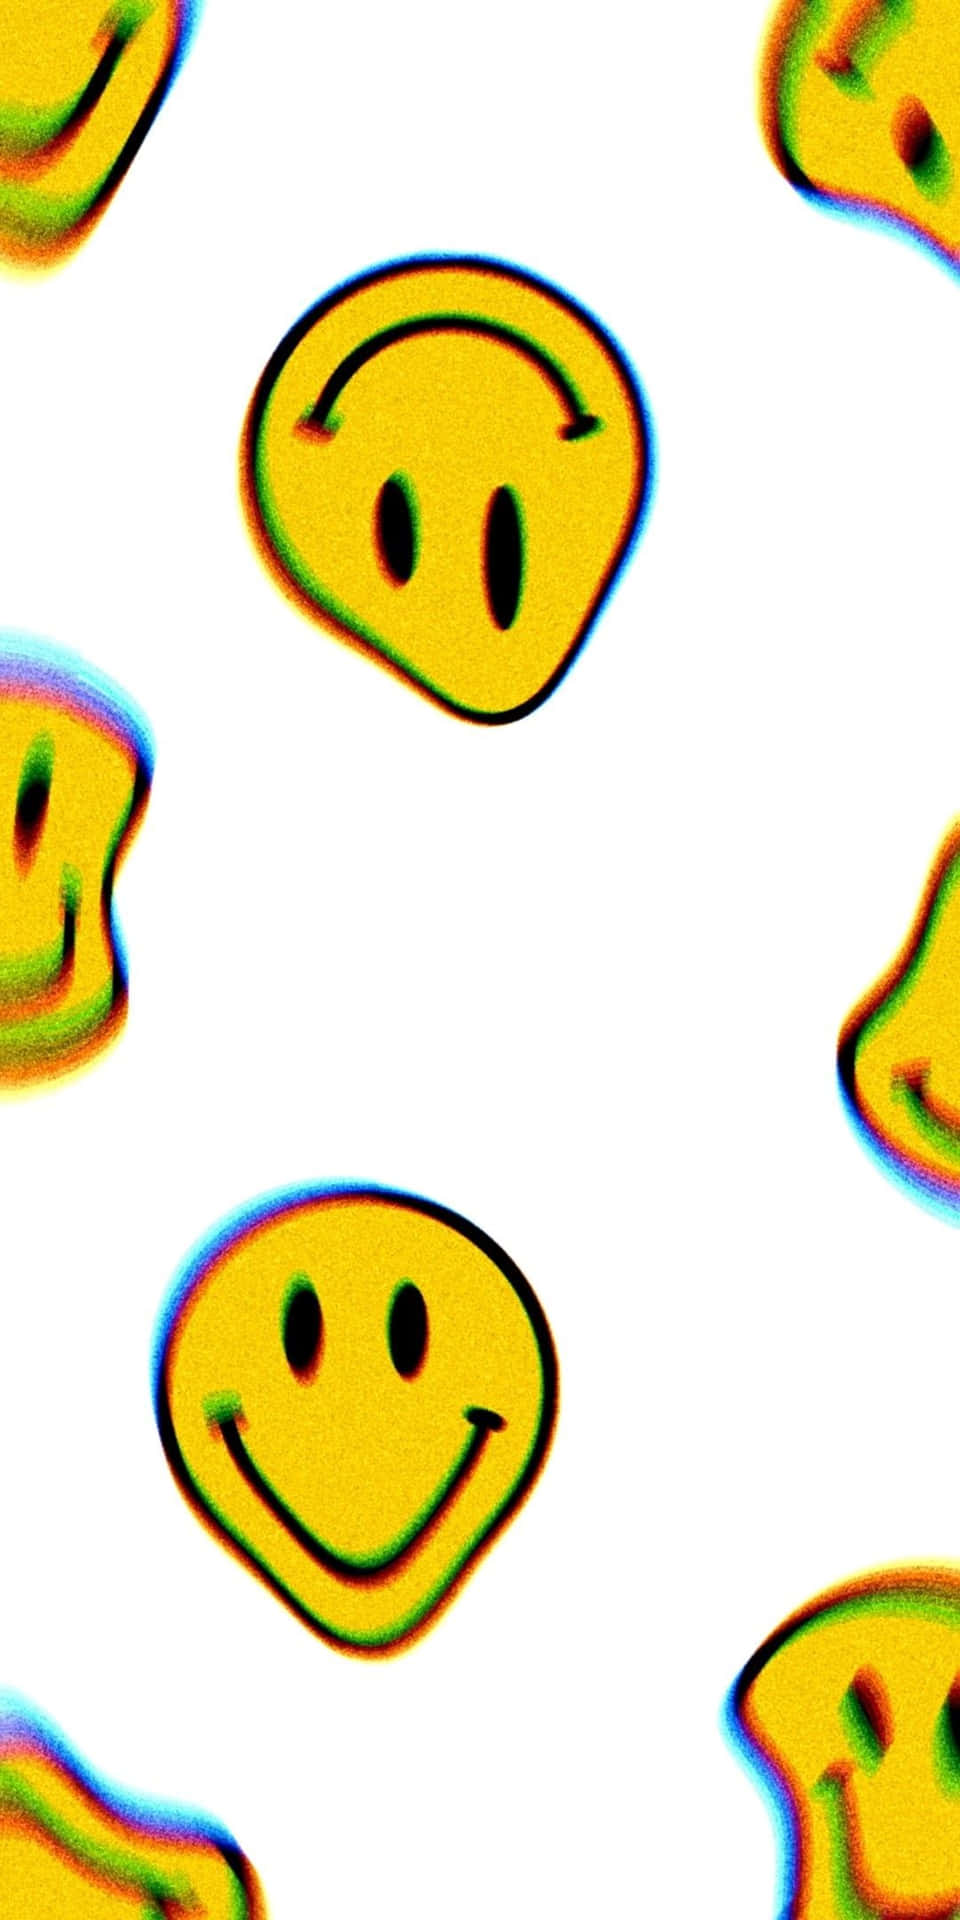 Trippy_ Smiley_ Face_ Pattern.jpg Wallpaper